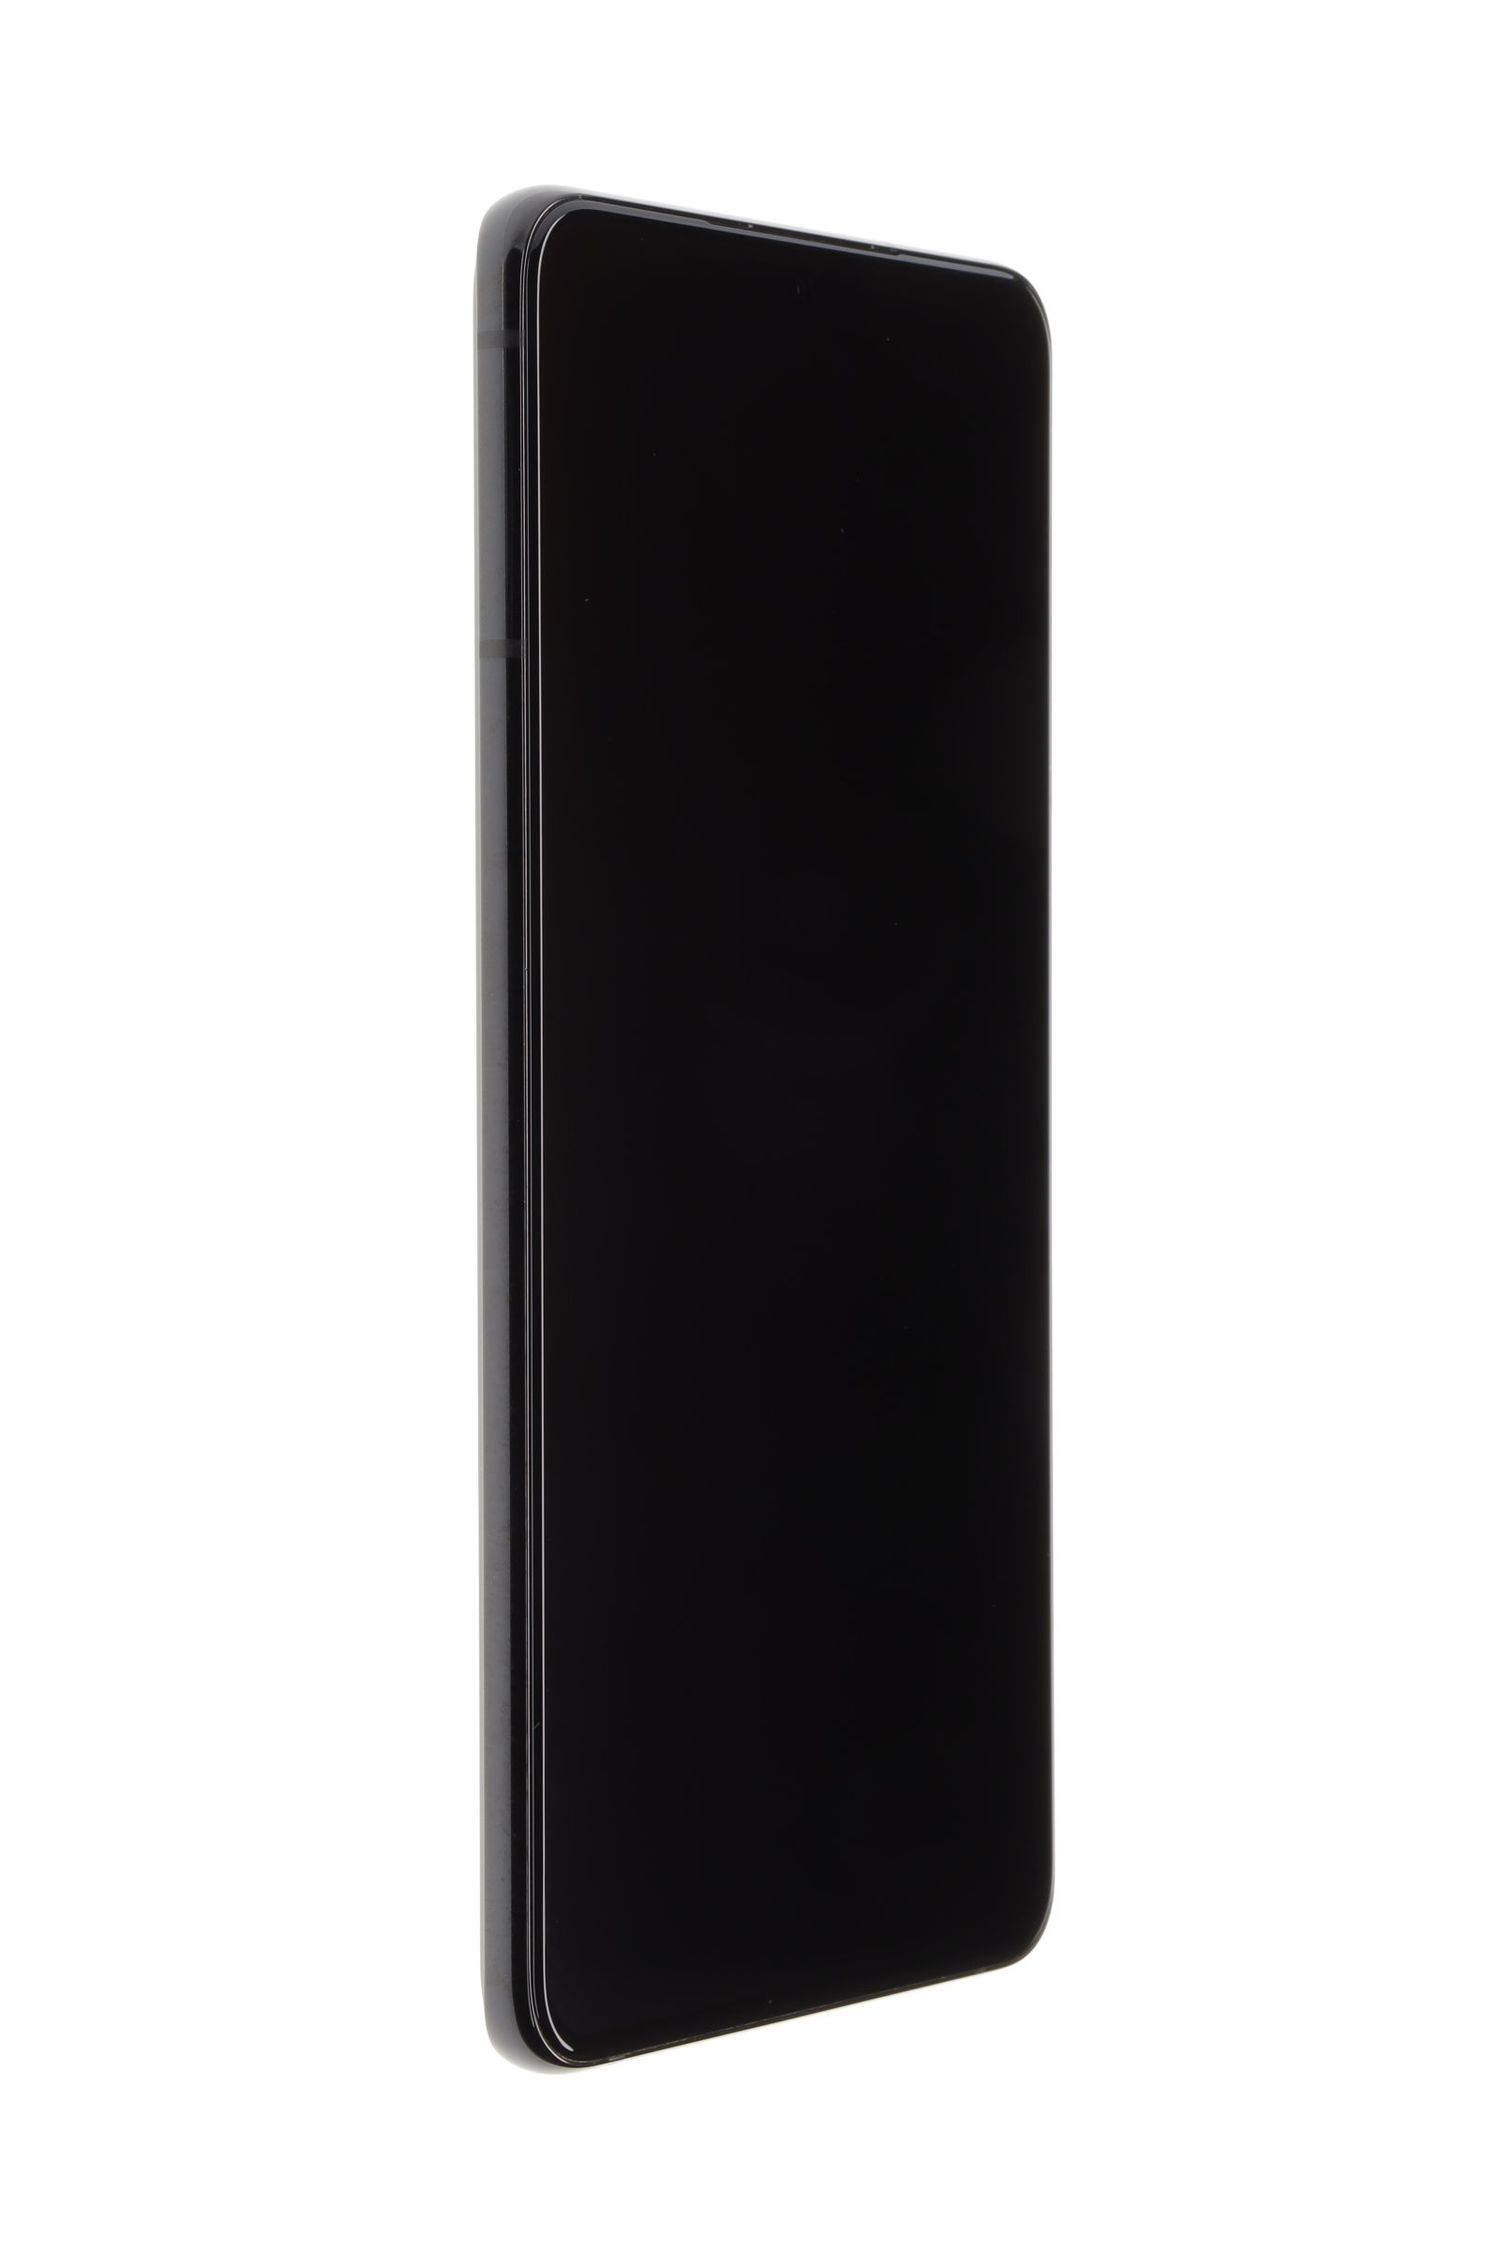 Telefon mobil Samsung Galaxy S21 Plus 5G Dual Sim, Black, 128 GB, Excelent